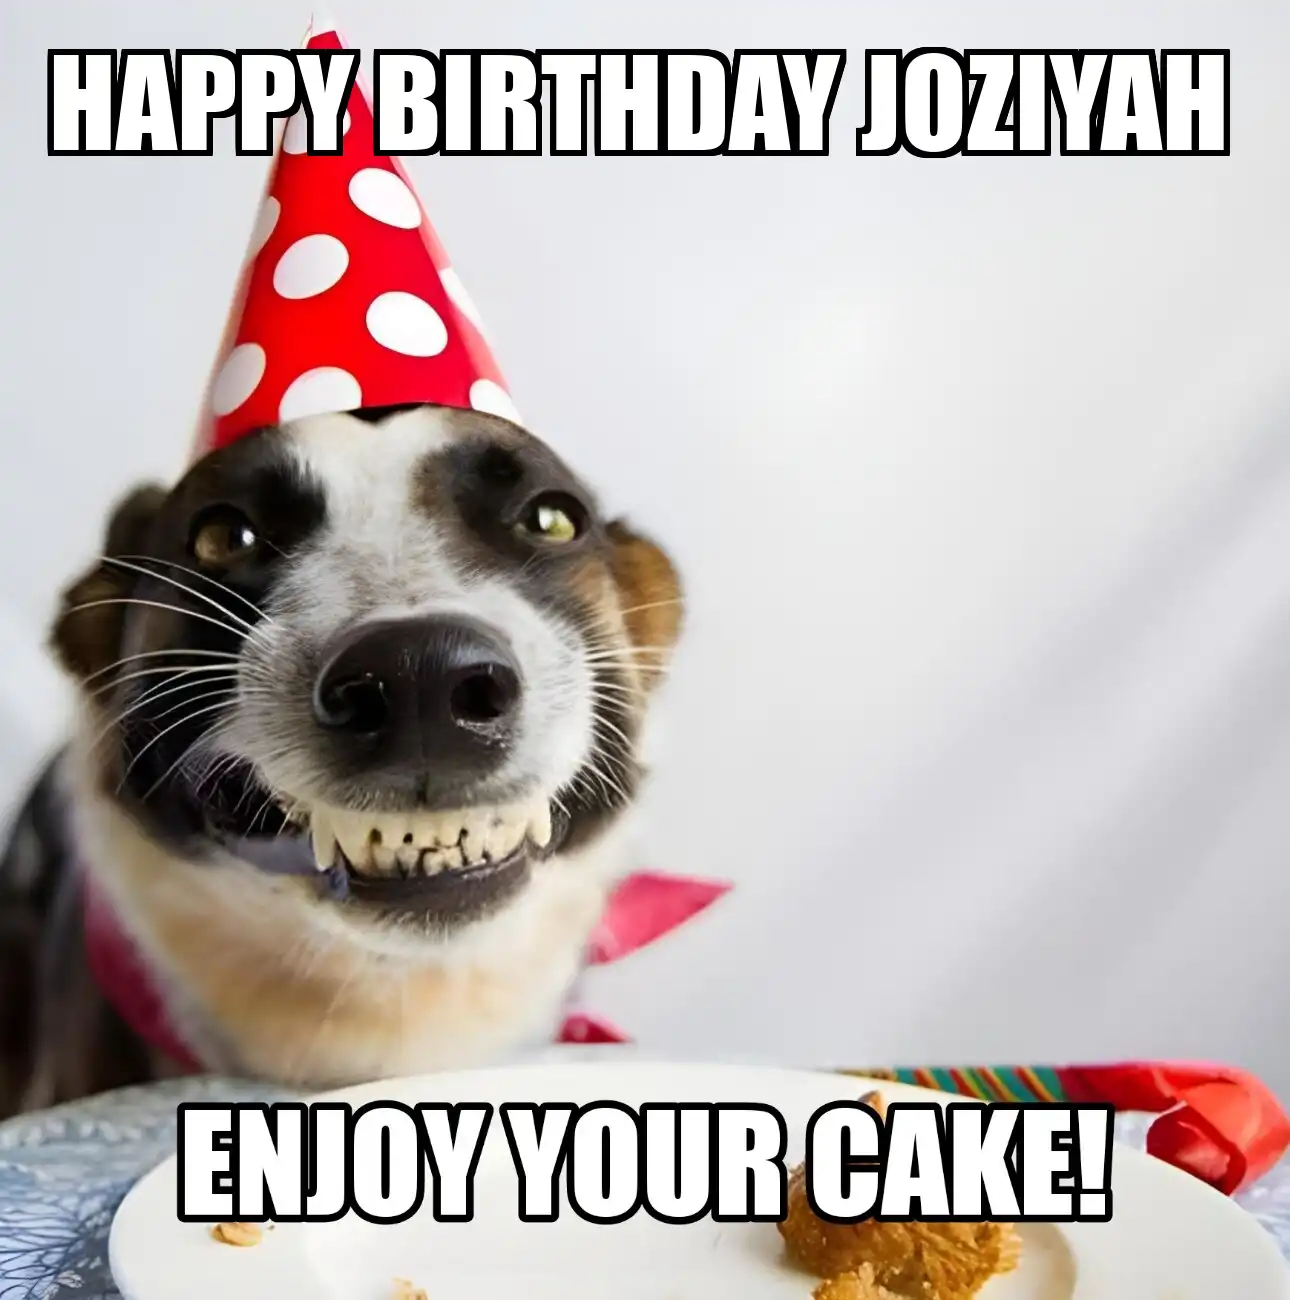 Happy Birthday Joziyah Enjoy Your Cake Dog Meme